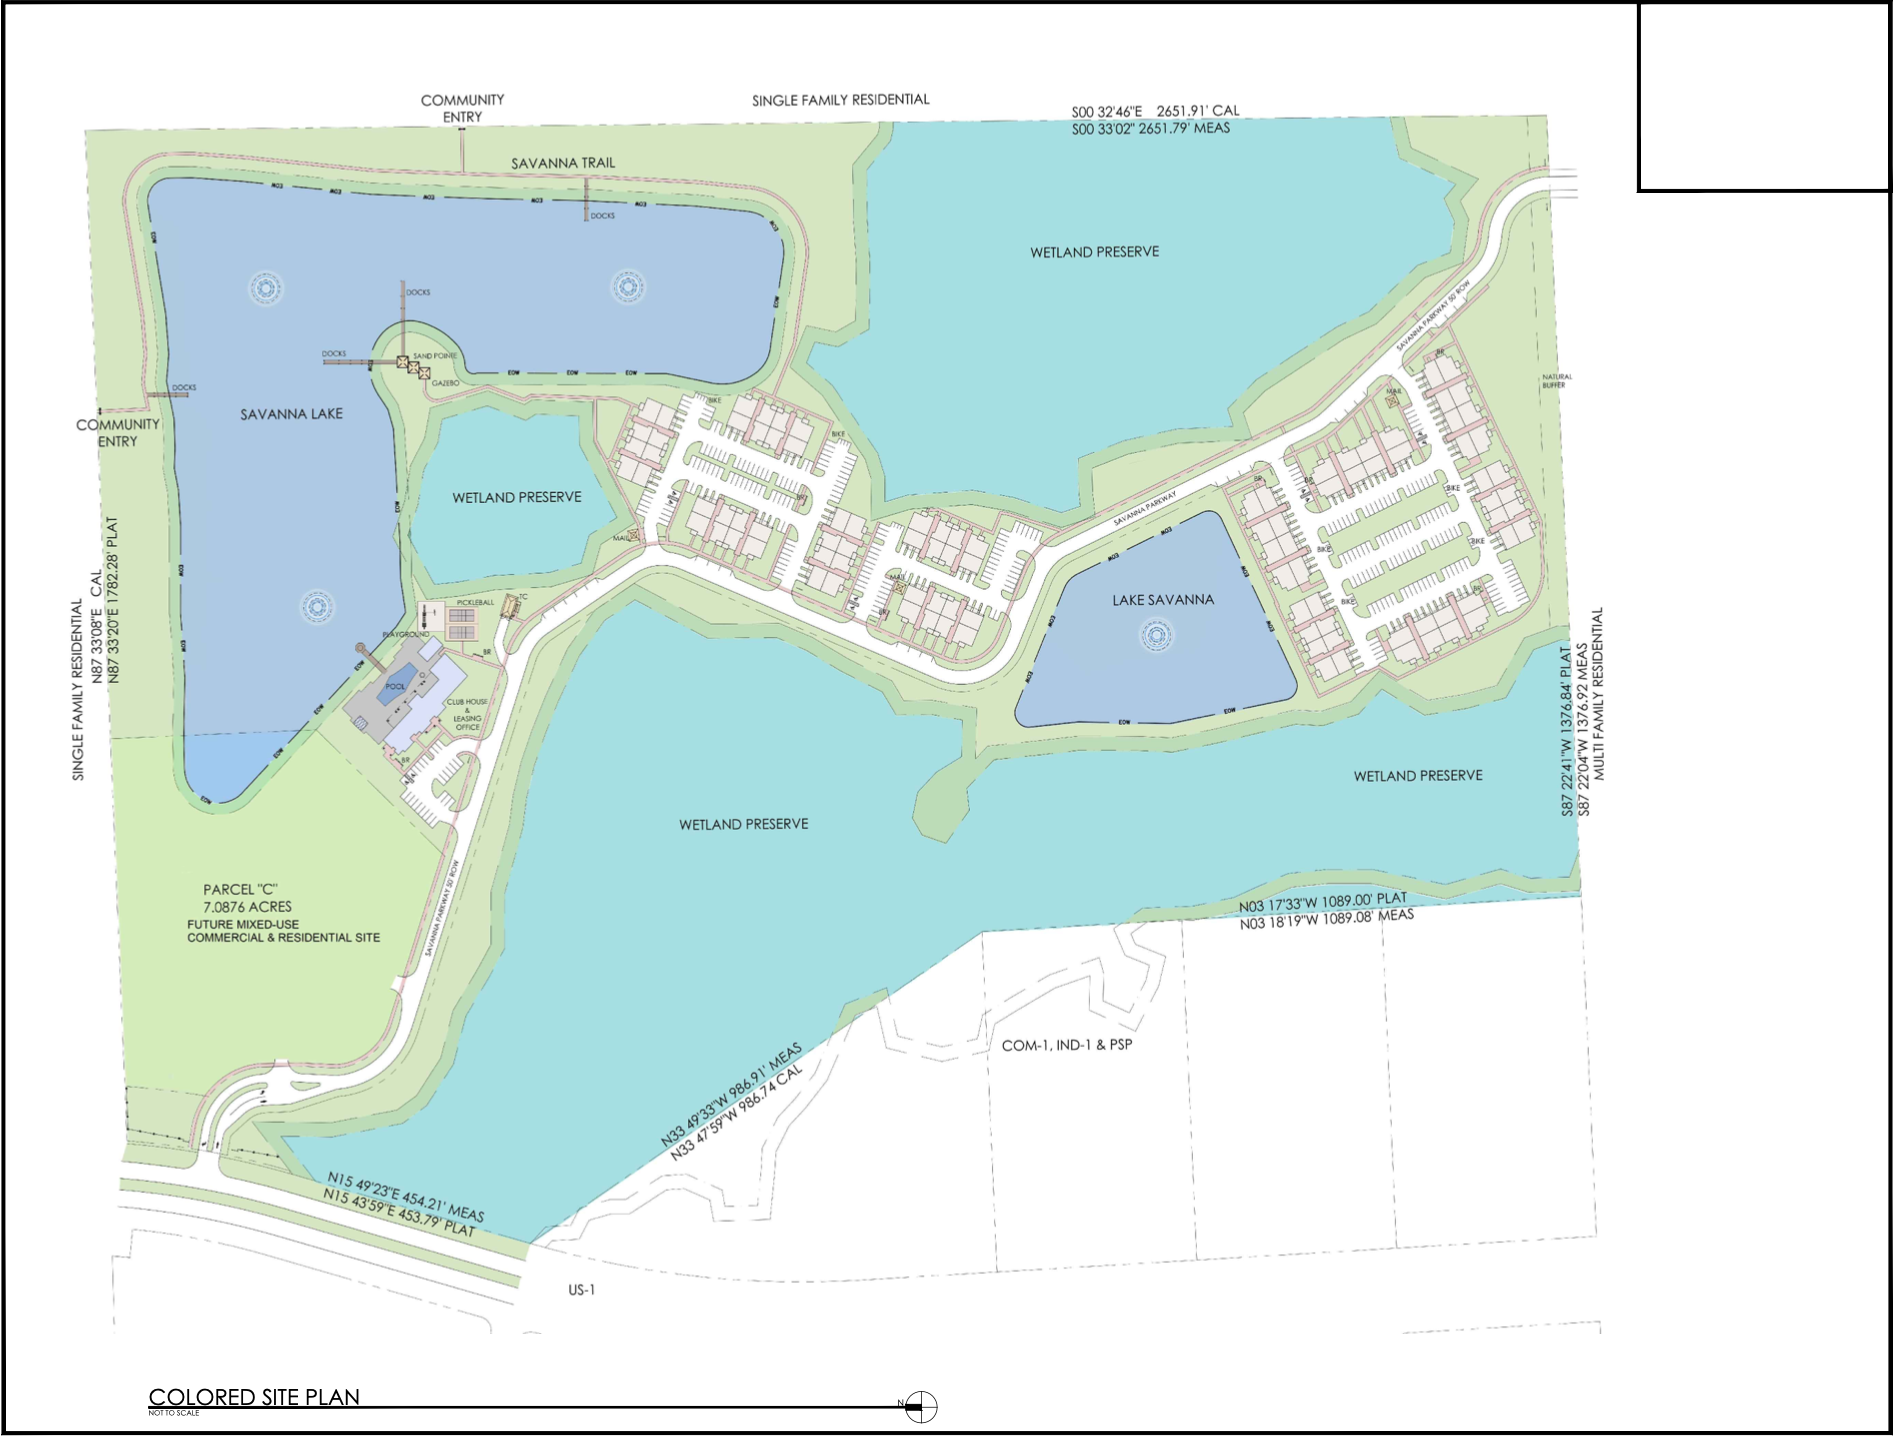 08 - Aviara Palm Coast - Site Plan.png